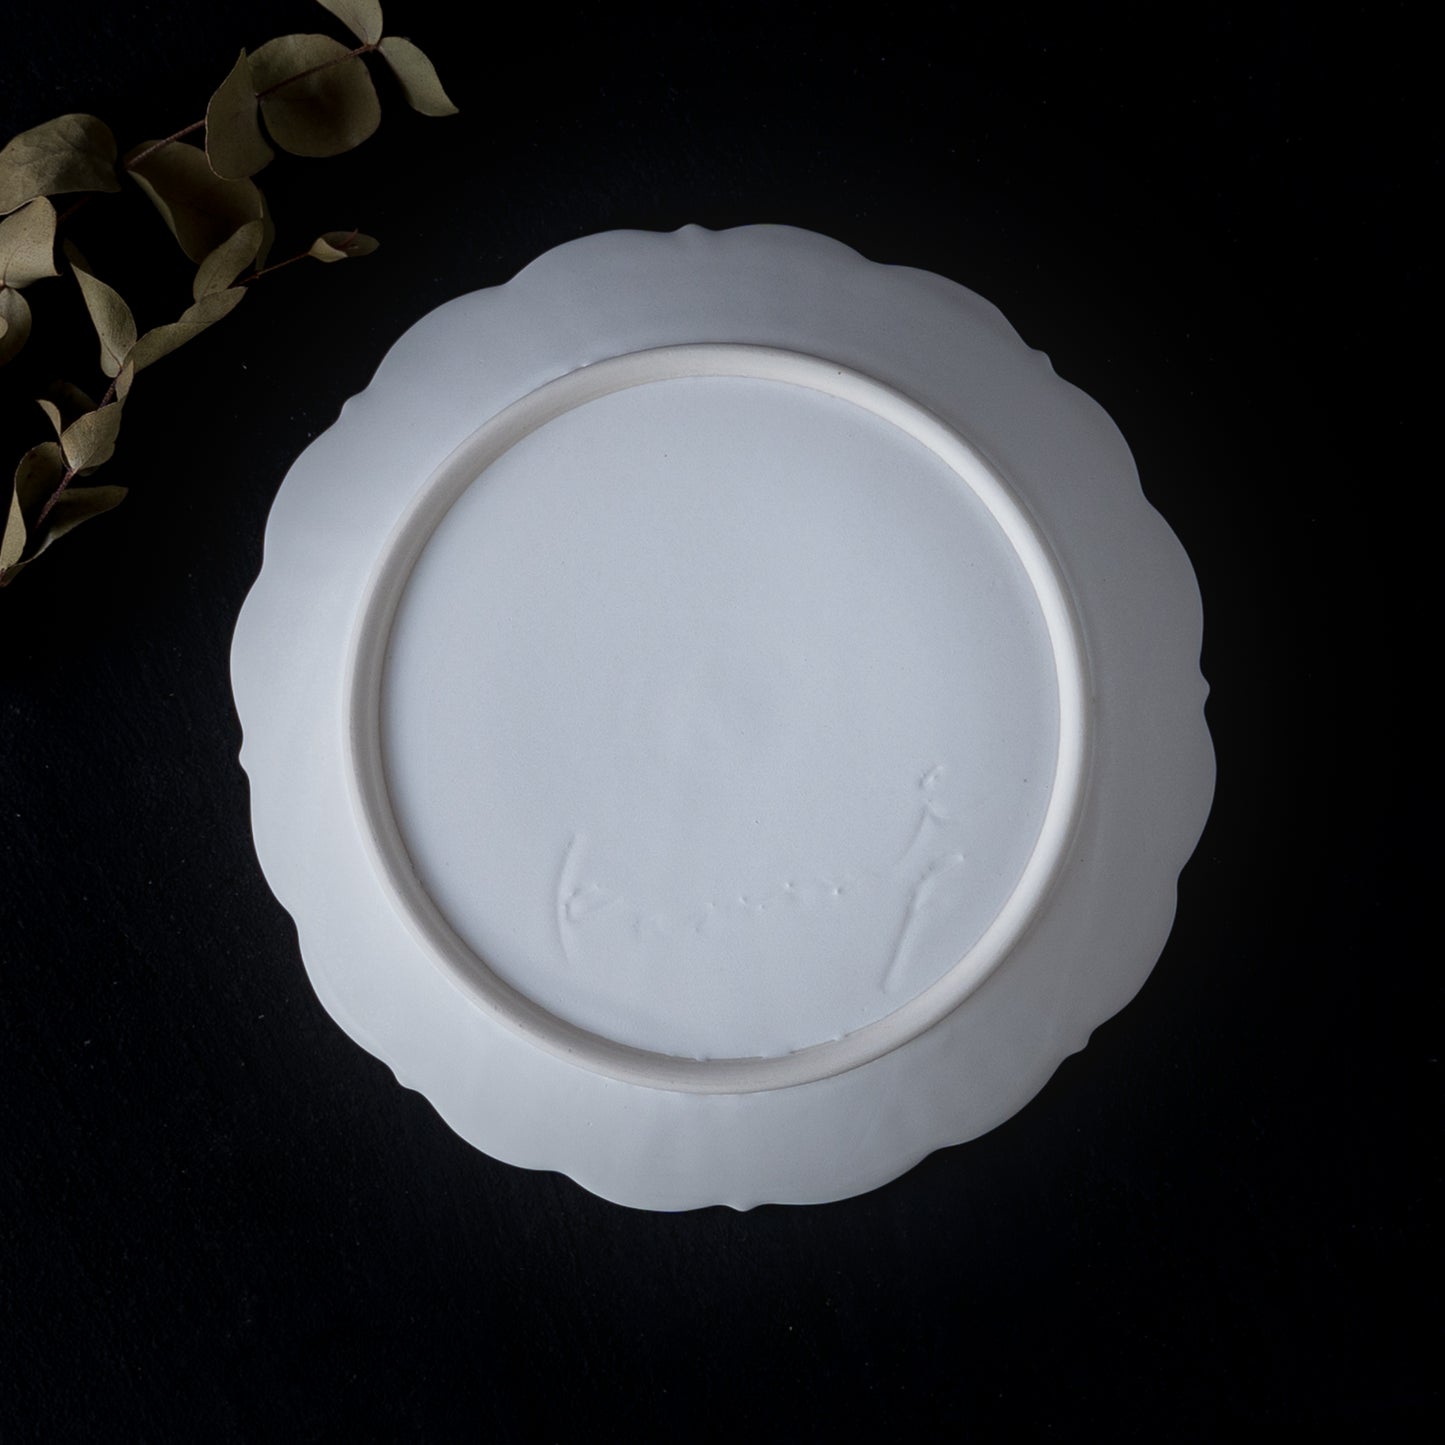 レリーフが美しい藤村佳澄さんの5寸レリーフ皿